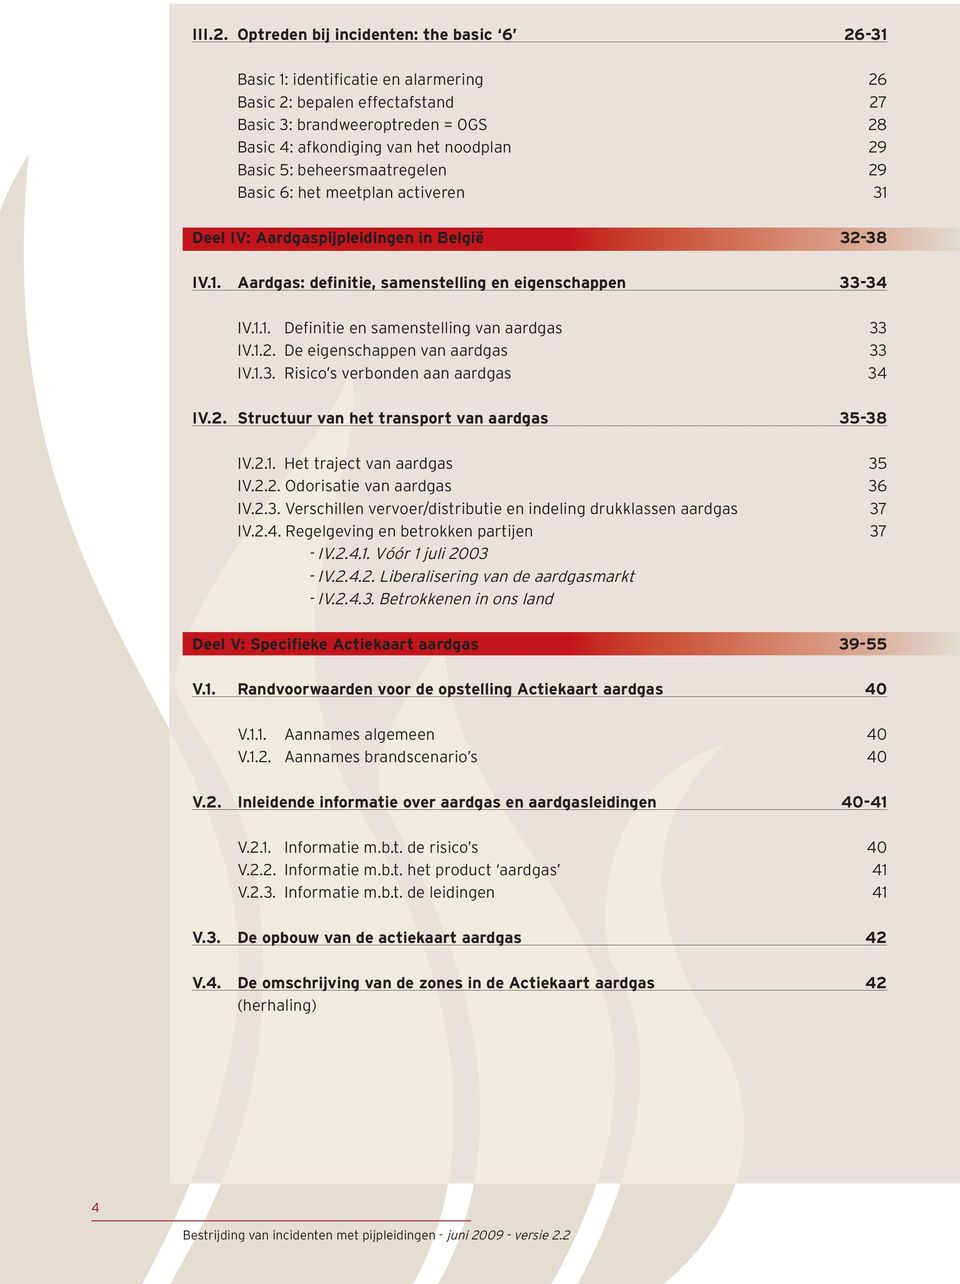 5: beheersmaatregelen 29 Basic 6: het meetplan activeren 31 Deel IV: Aardgaspijpleidingen in België 32-38 IV.1. Aardgas: definitie, samenstelling en eigenschappen 33-34 IV.1.1. Definitie en samenstelling van aardgas 33 IV.